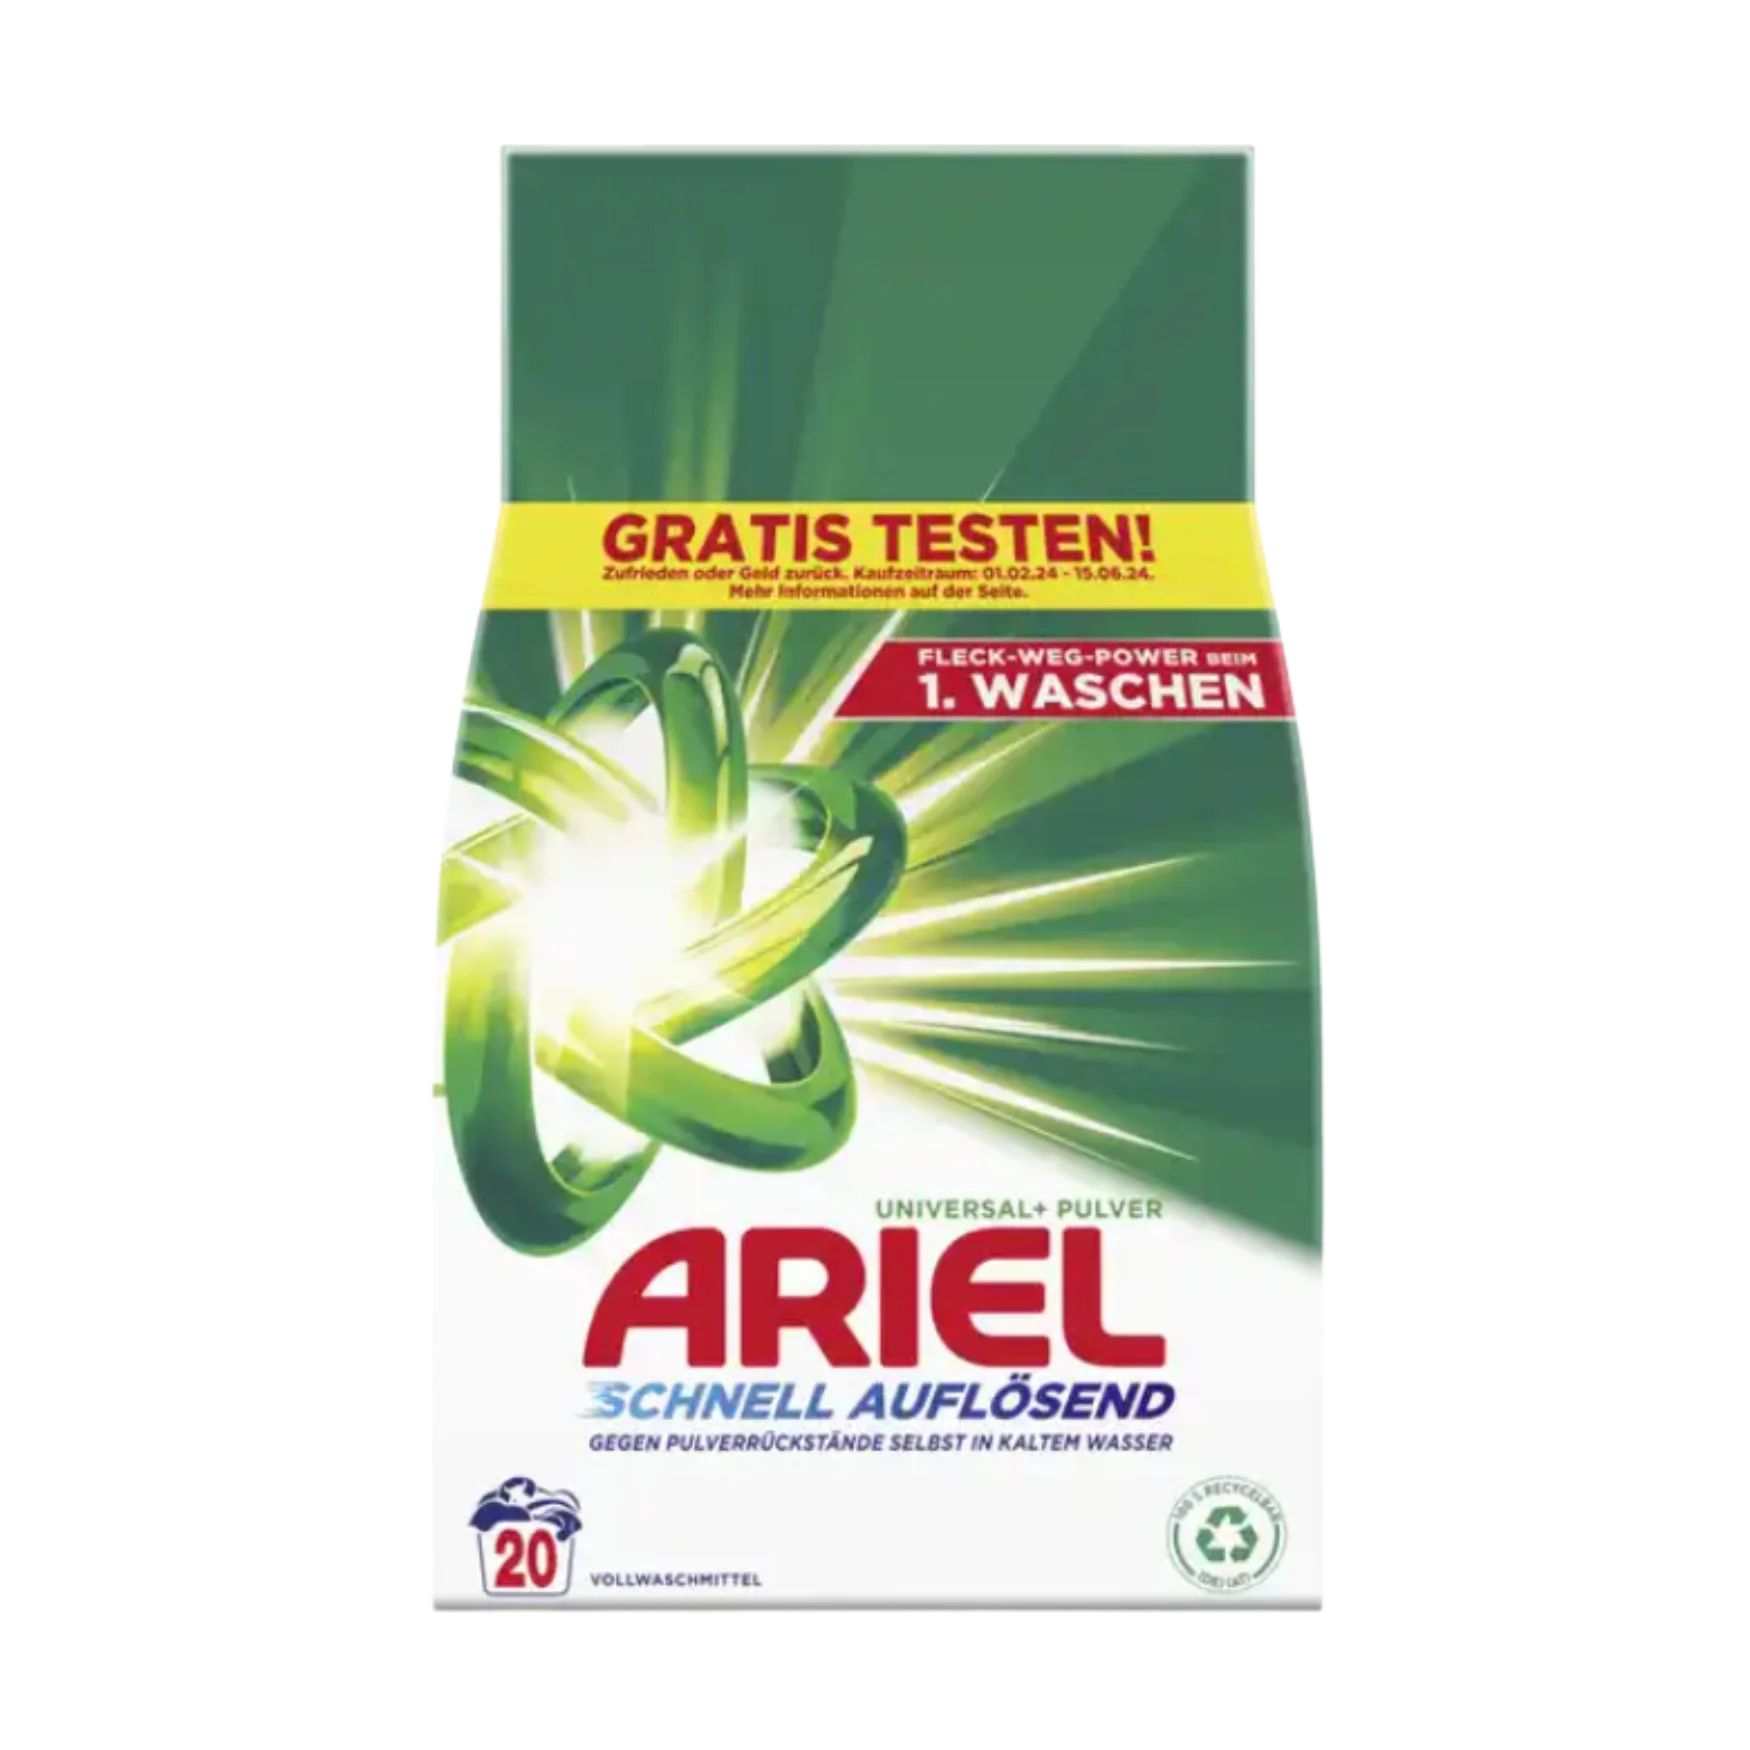 Ariel Universal+ Pulver Vollwaschmittel, 1,2 kg